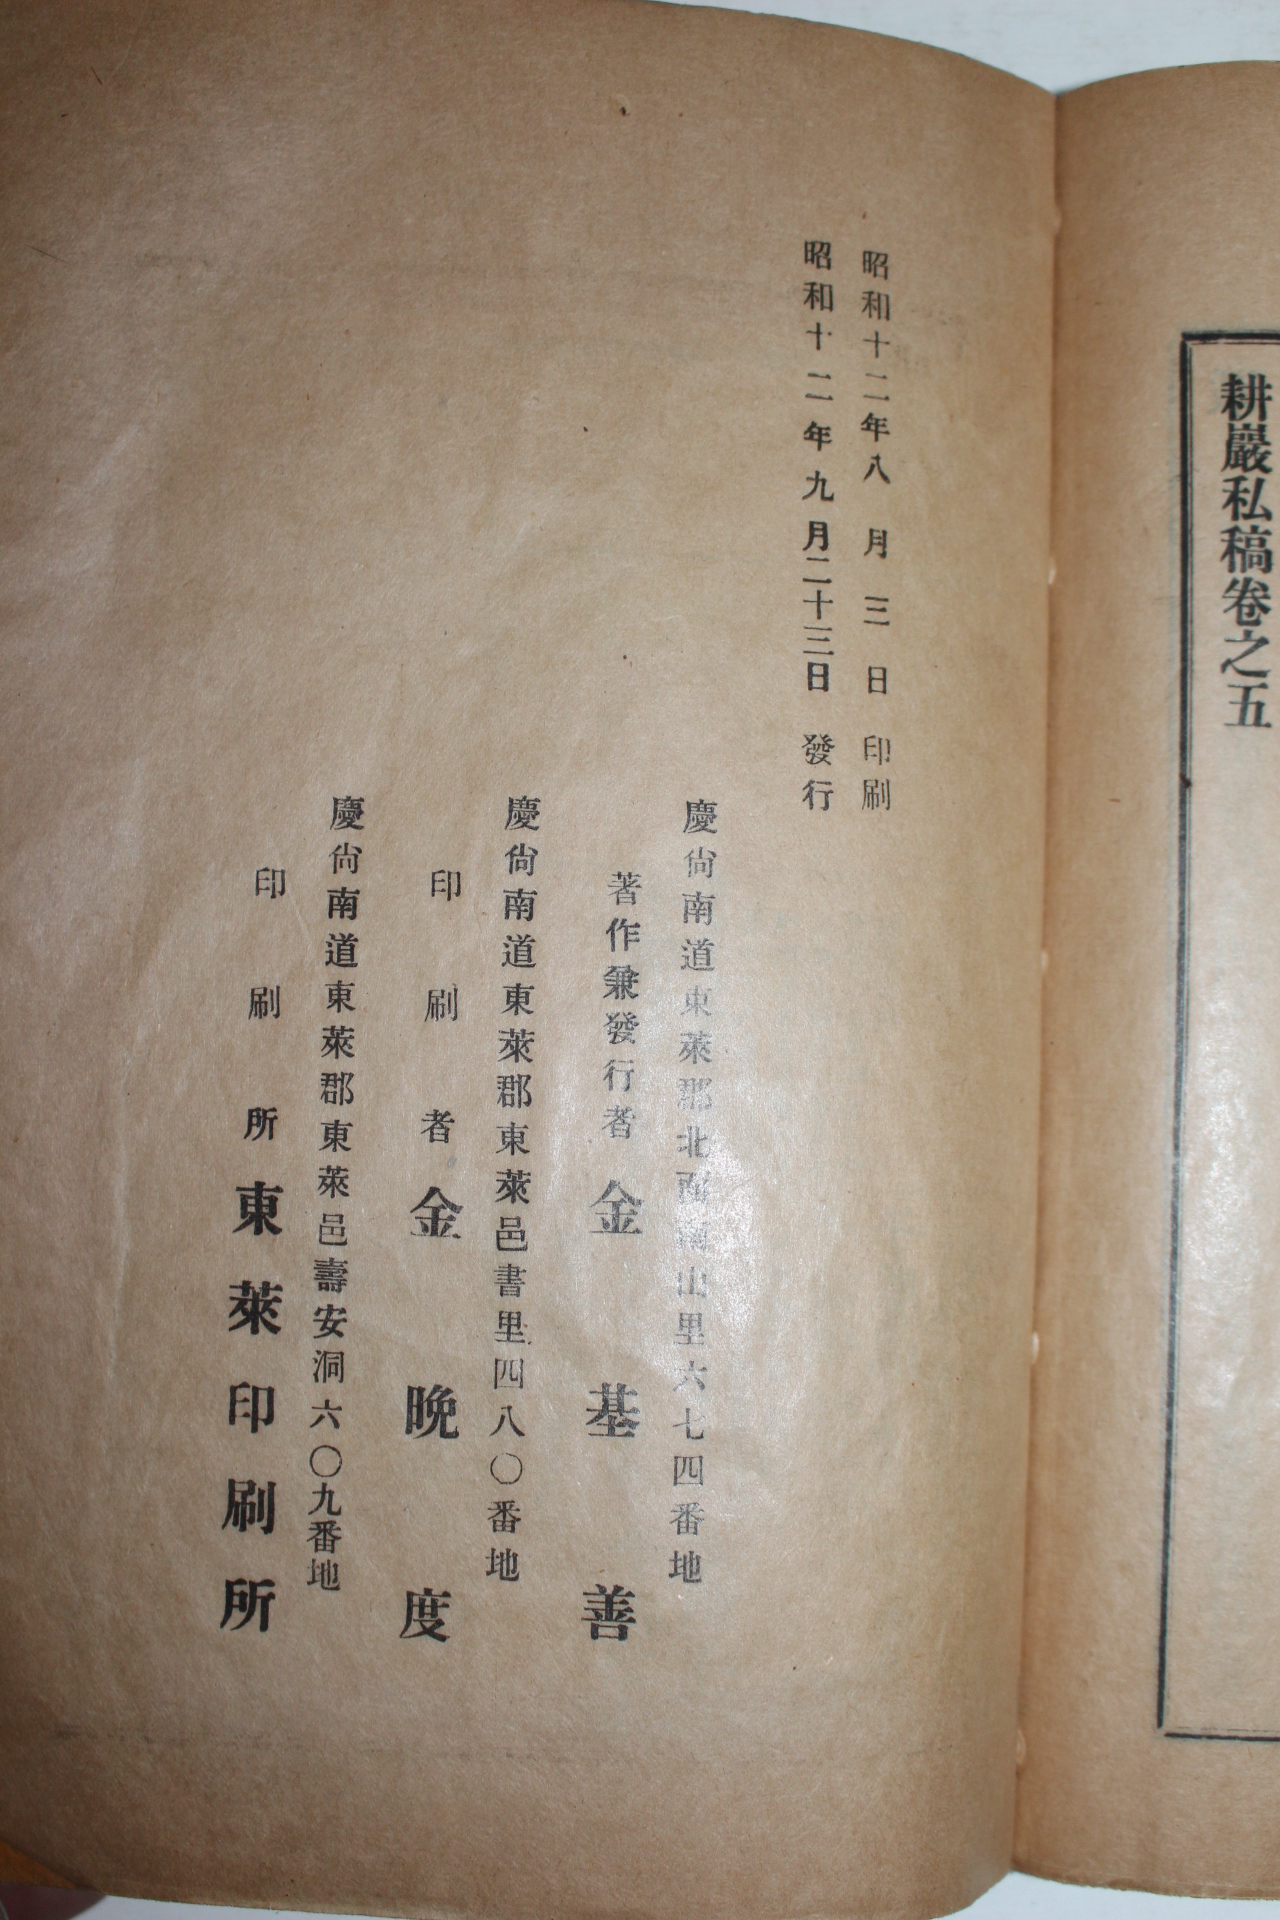 1937년 문성준(文聲駿) 경암사고(耕巖私稿) 5권2책완질